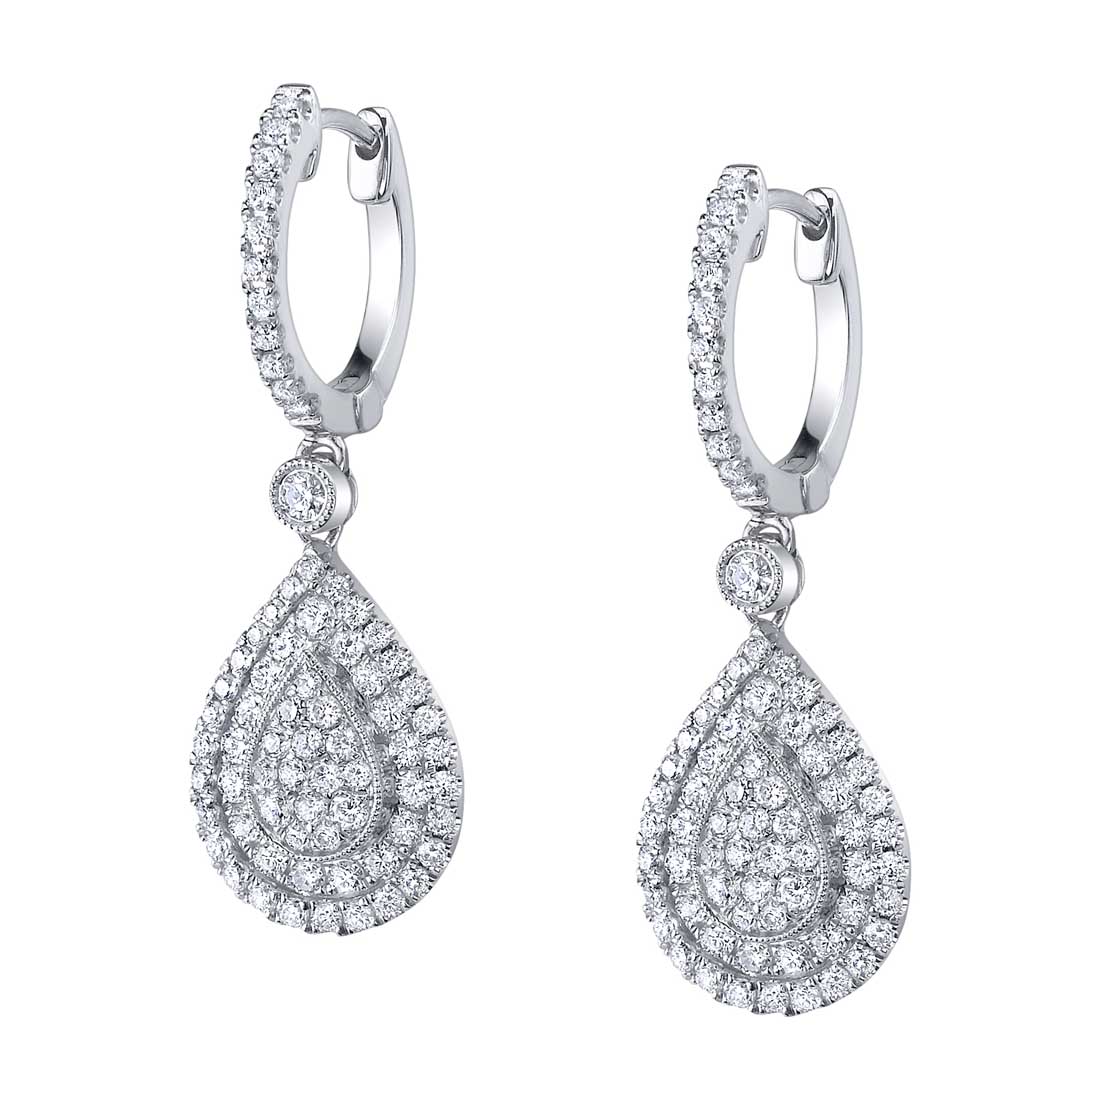 Pear Shaped Diamond Drop Earrings